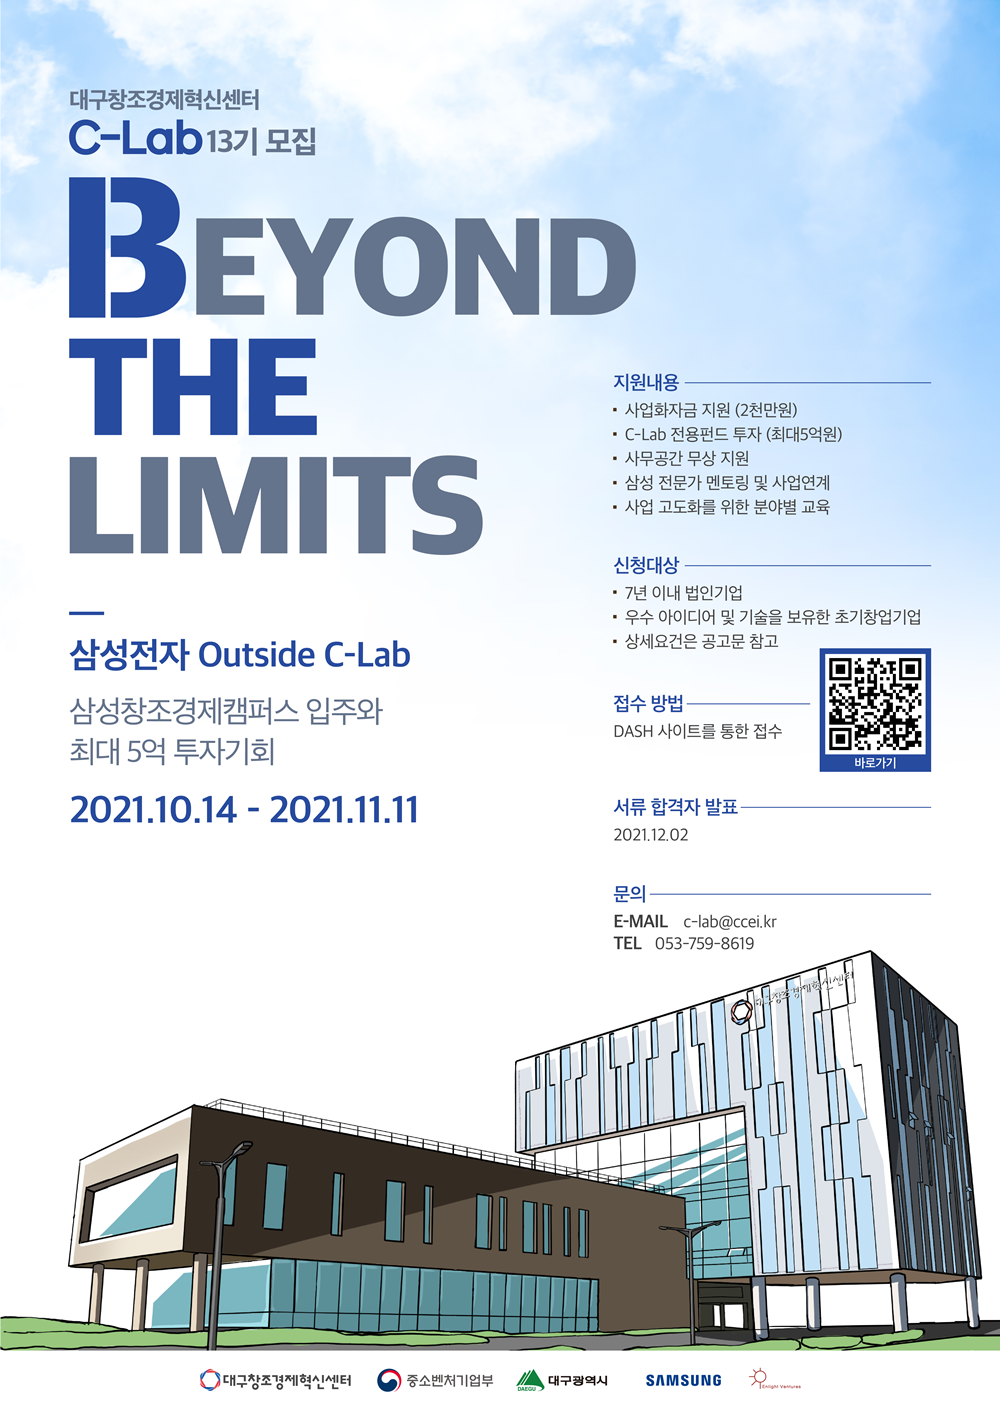 대구창조경제혁신센터 C-Lab13기 모집 BEYOND THE LIMITS 삼성전자 Outside C-Lab 삼성창조경제캠퍼스 입주와 최대 5억 투자기회 2021.10.14 - 2021.11.11 지원내용 사업화자금지원 (2천만원) C-Lab 전용펀드 투자 (최대 5억원) 사무공간 무상 지원 삼성 전문가 멘토링 및 사업연계 사업 고도화를 위한 분야별 교육 신청대상 7년 이내 법인기업 우수 아이디어 및 기술을 보유한 초기창업기업 상세요건은 공고문 참고 접수방법 DASH 사이트를 통한 접수 바로바기 서류 합격자 발표 2021.12.02 문의 E-MAIL c-lab@ccei.kr TEL 053-759-8619 대구창조경제혁신센터 중소벤처기업부 대구광역시 SAMSUNG